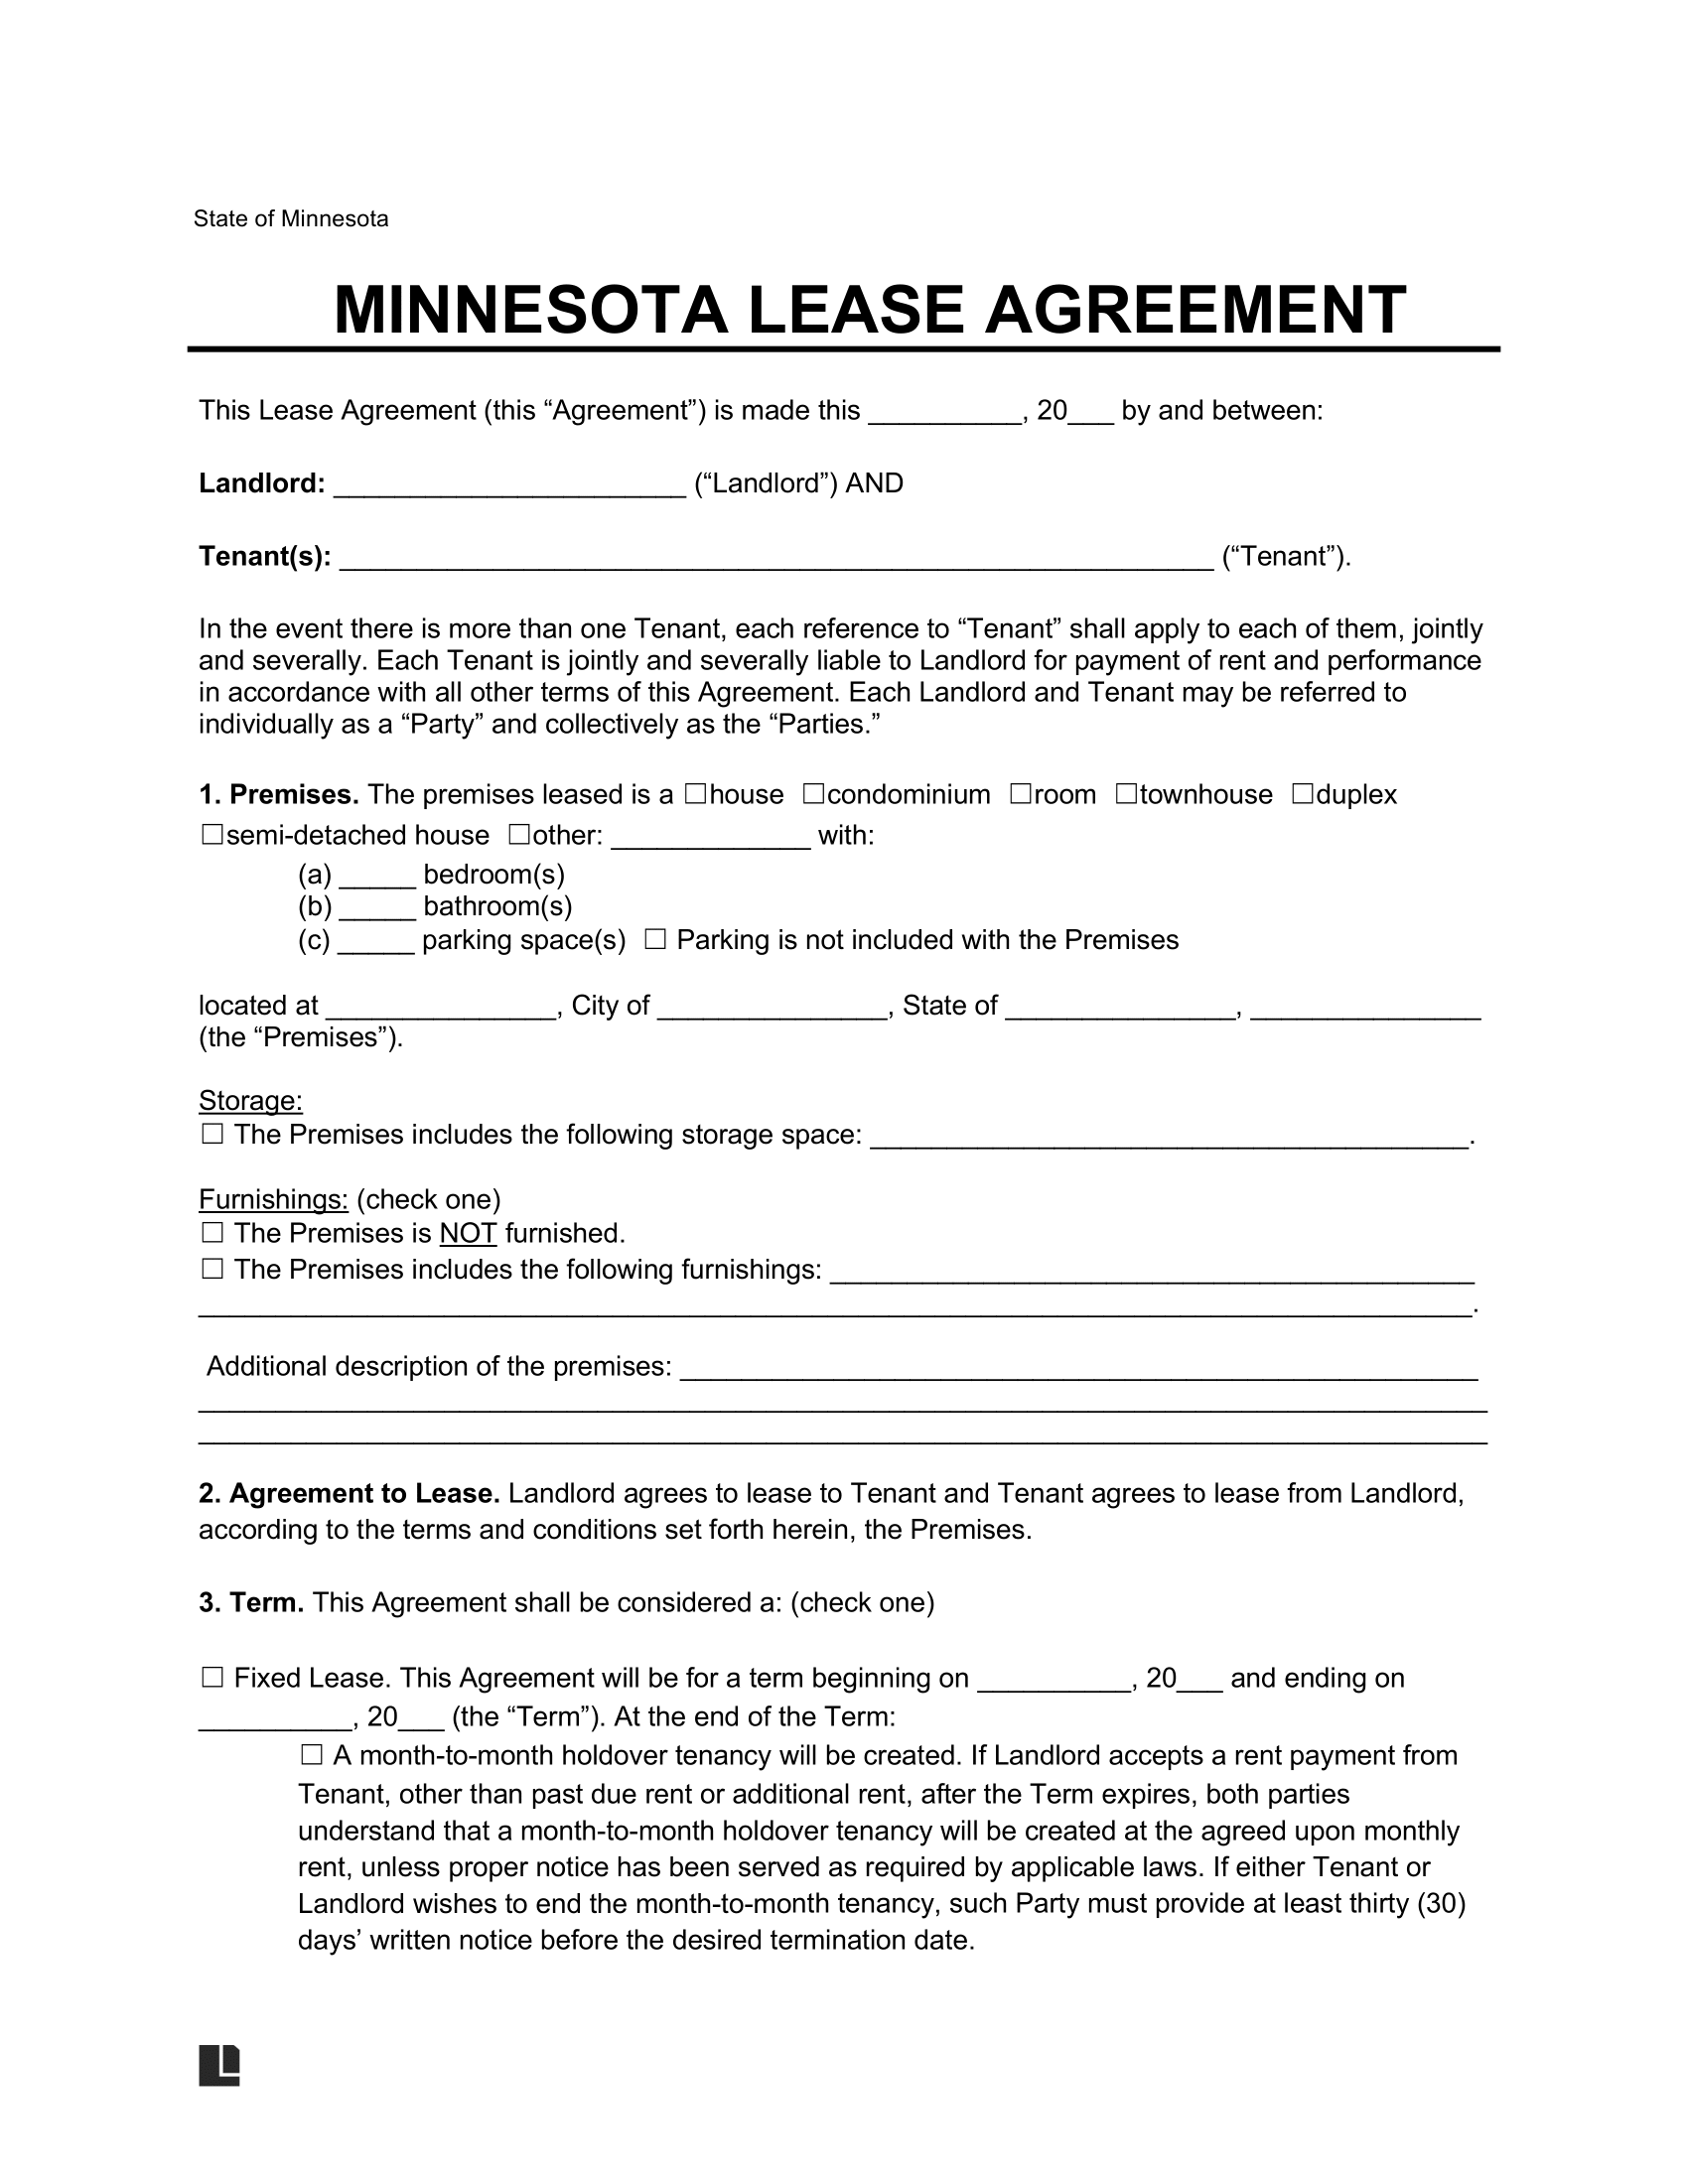 minnesota lease agreement